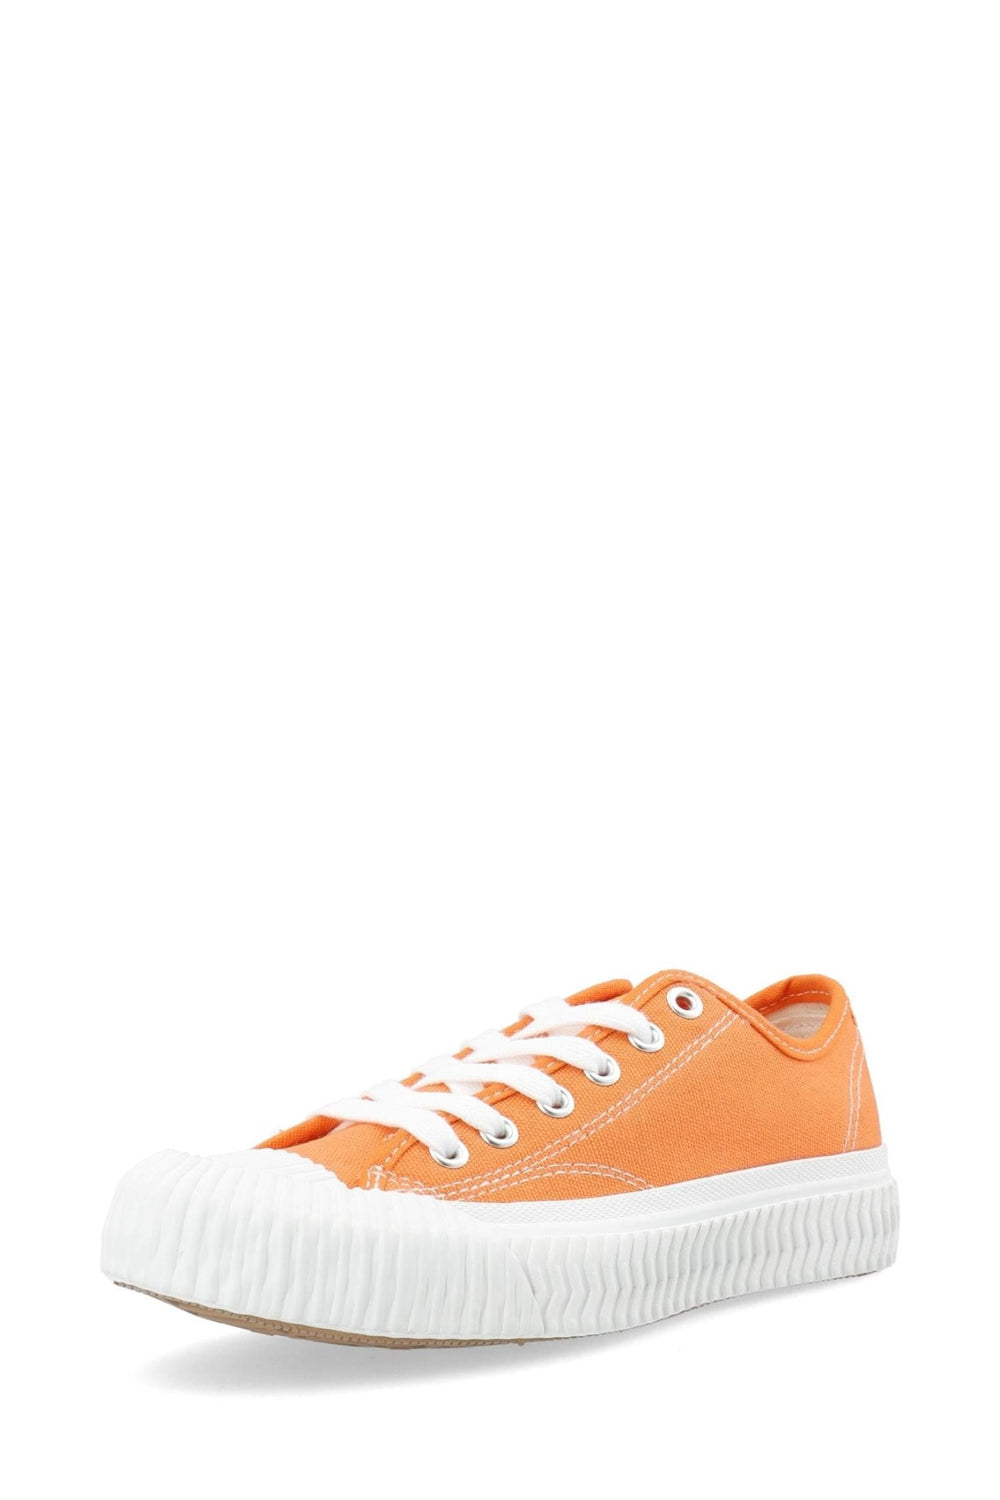 Bianina Sneaker Canvas Orange | Sko | Smuk - Dameklær på nett